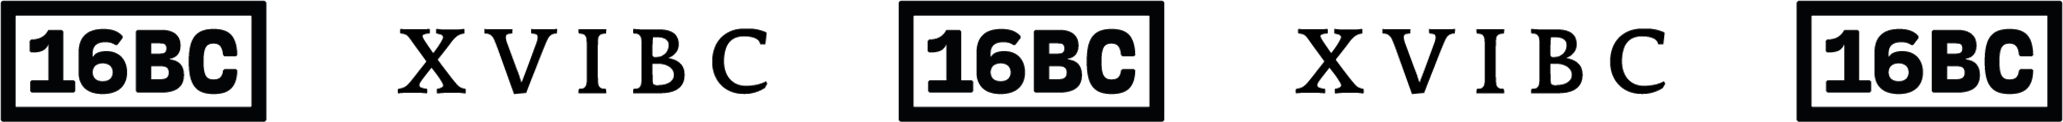 16BC-Streetwear-Logos